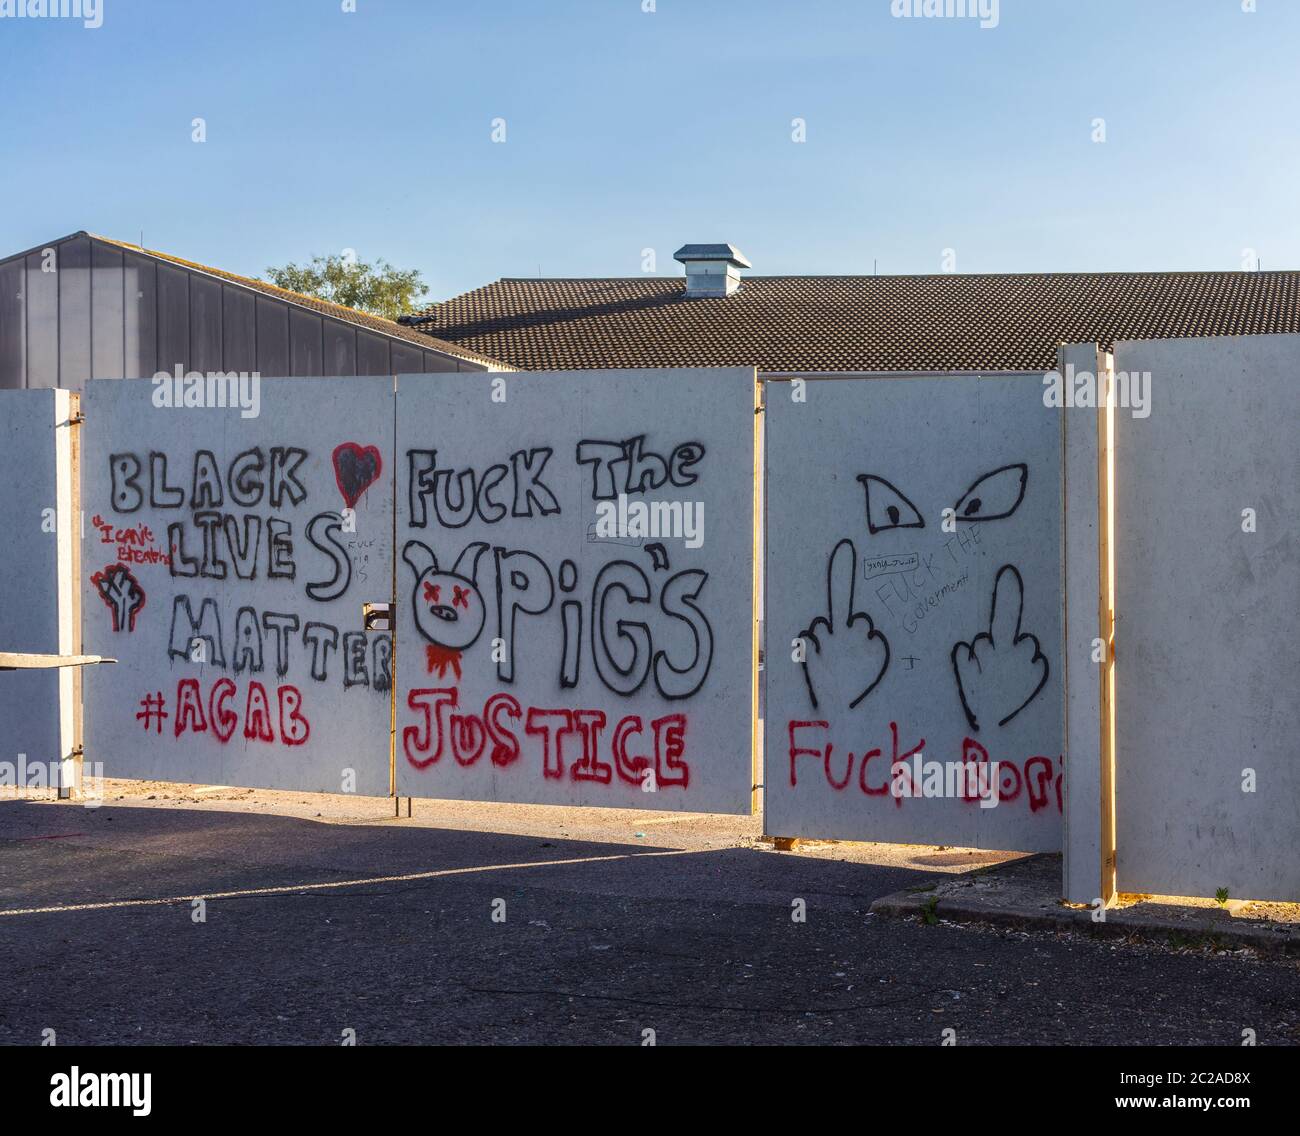 Black Lives Matter proteste graffiti sur une clôture / mur dans le district de Shirley juin 2020, Southampton, Angleterre, Royaume-Uni Banque D'Images